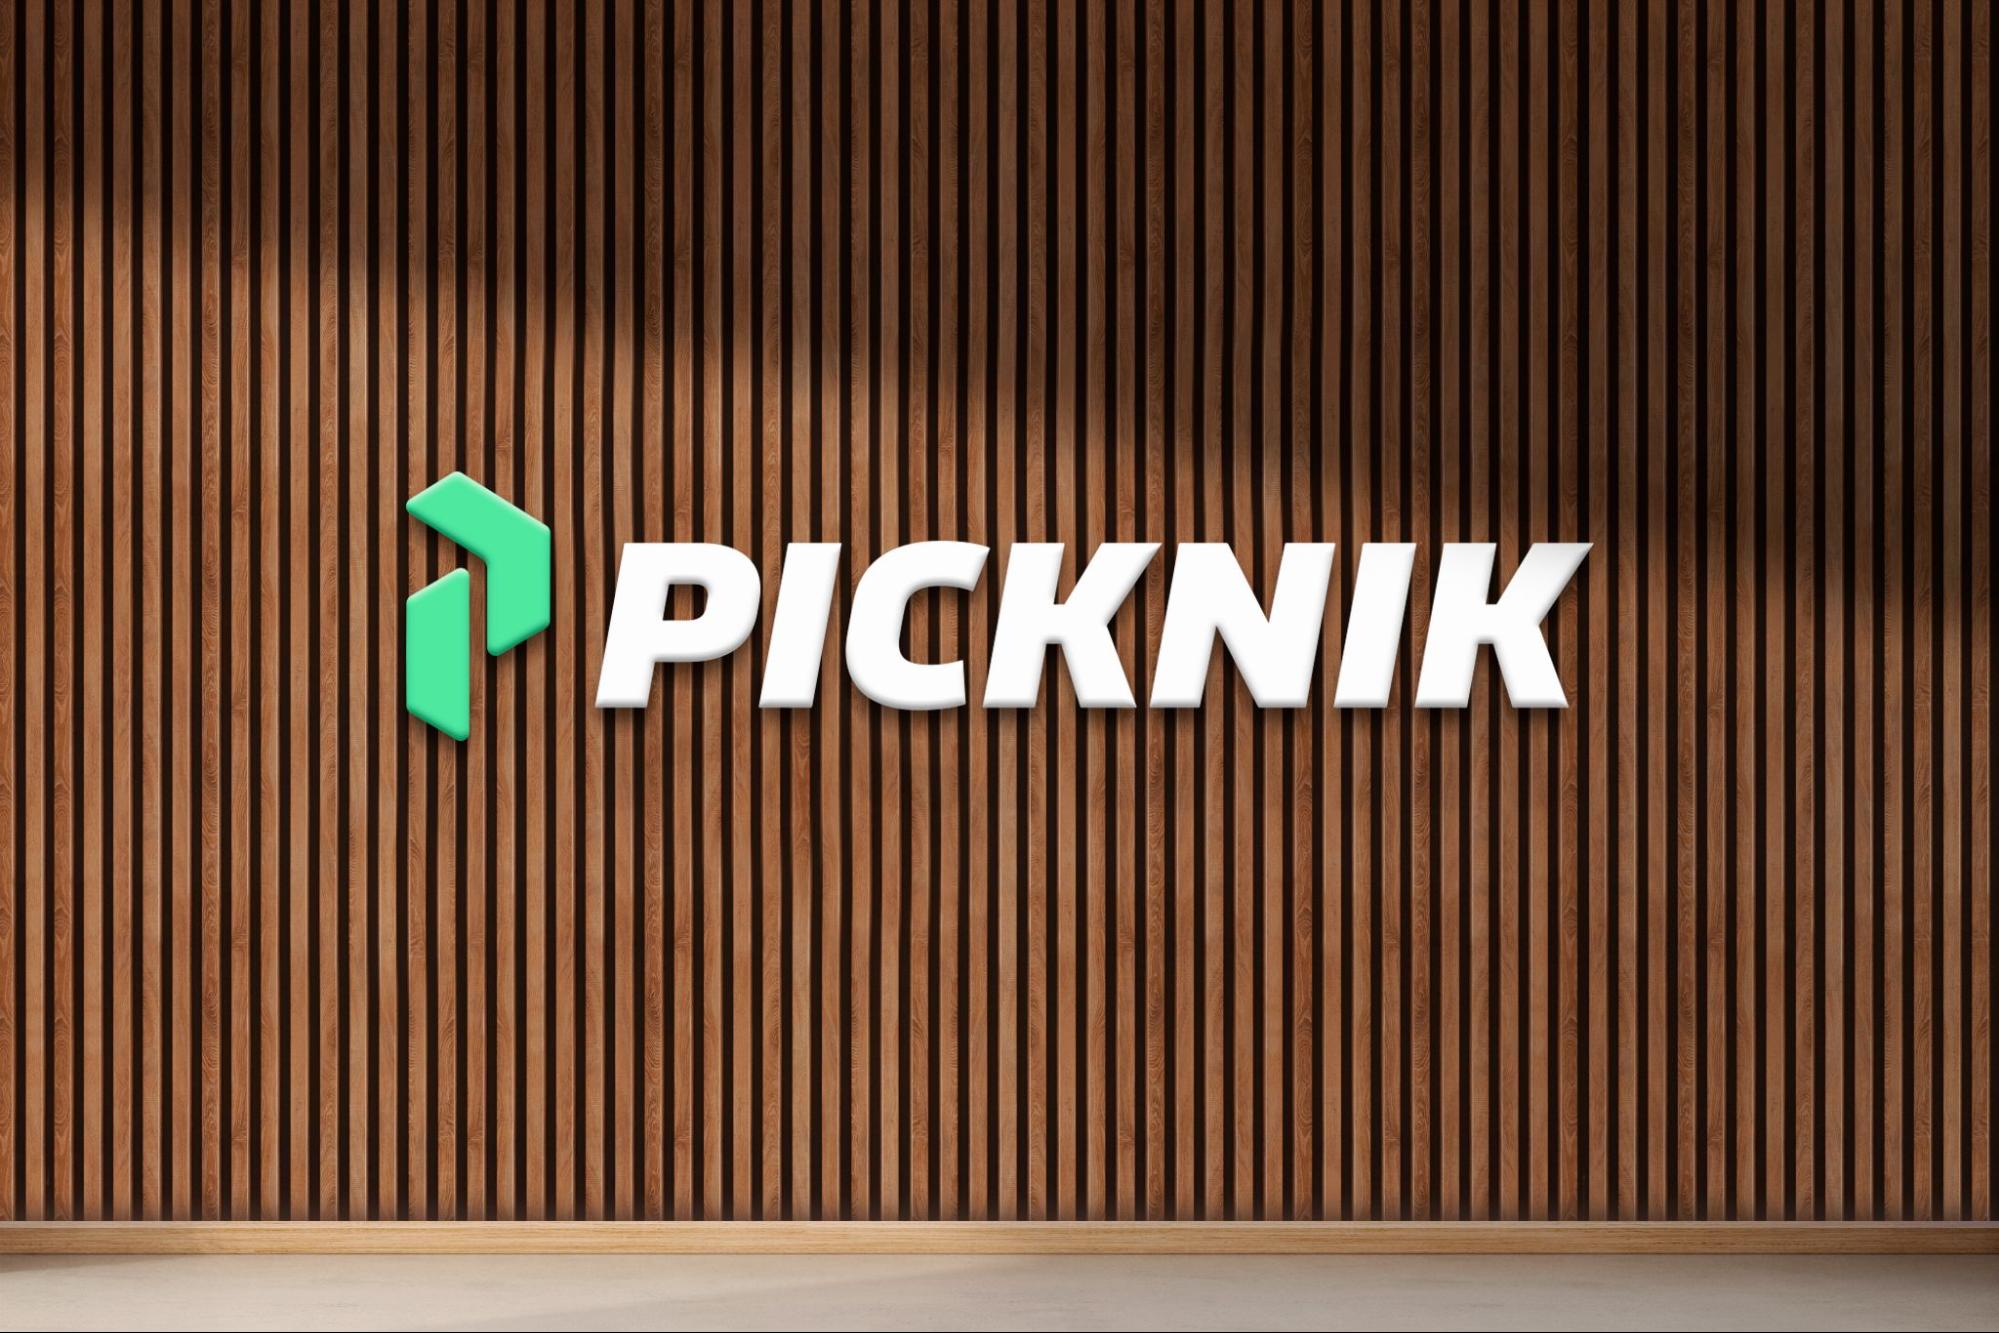 Picknik logo new wood wall